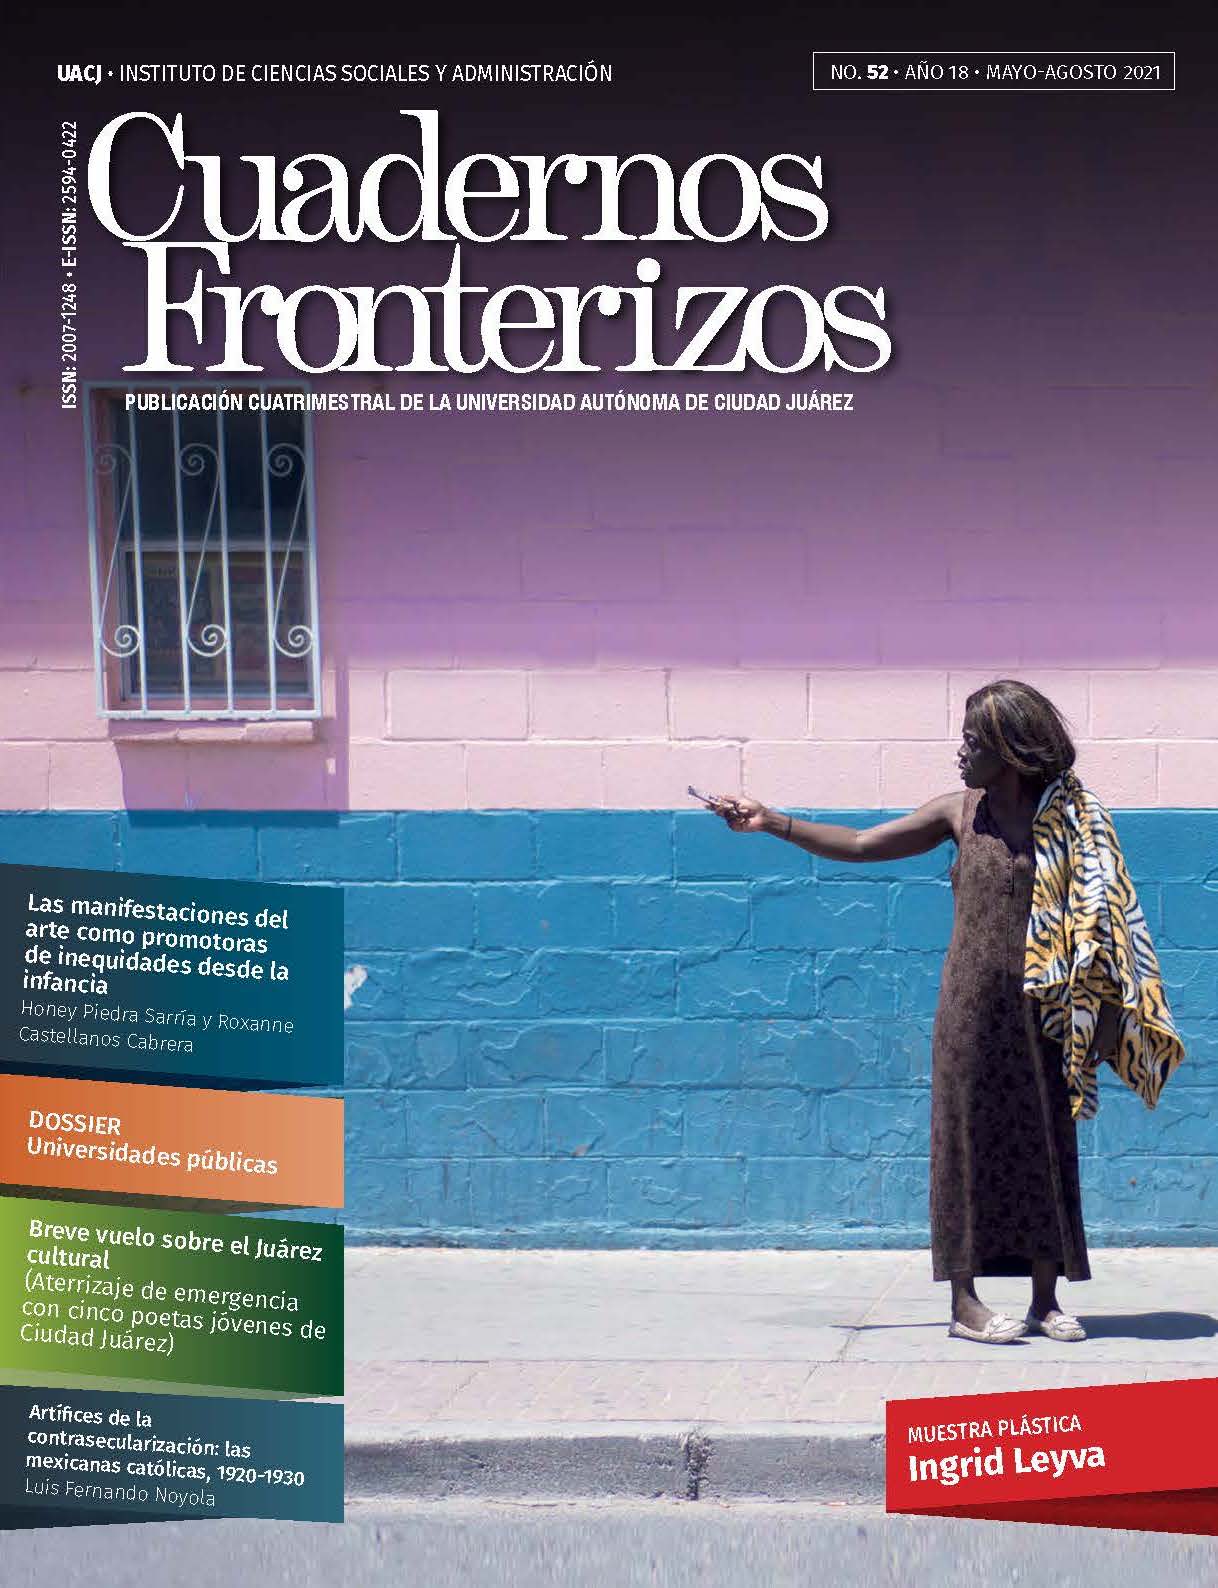 Características prosociales y producción científica de profesores de la Universidad Autónoma de Chihuahua